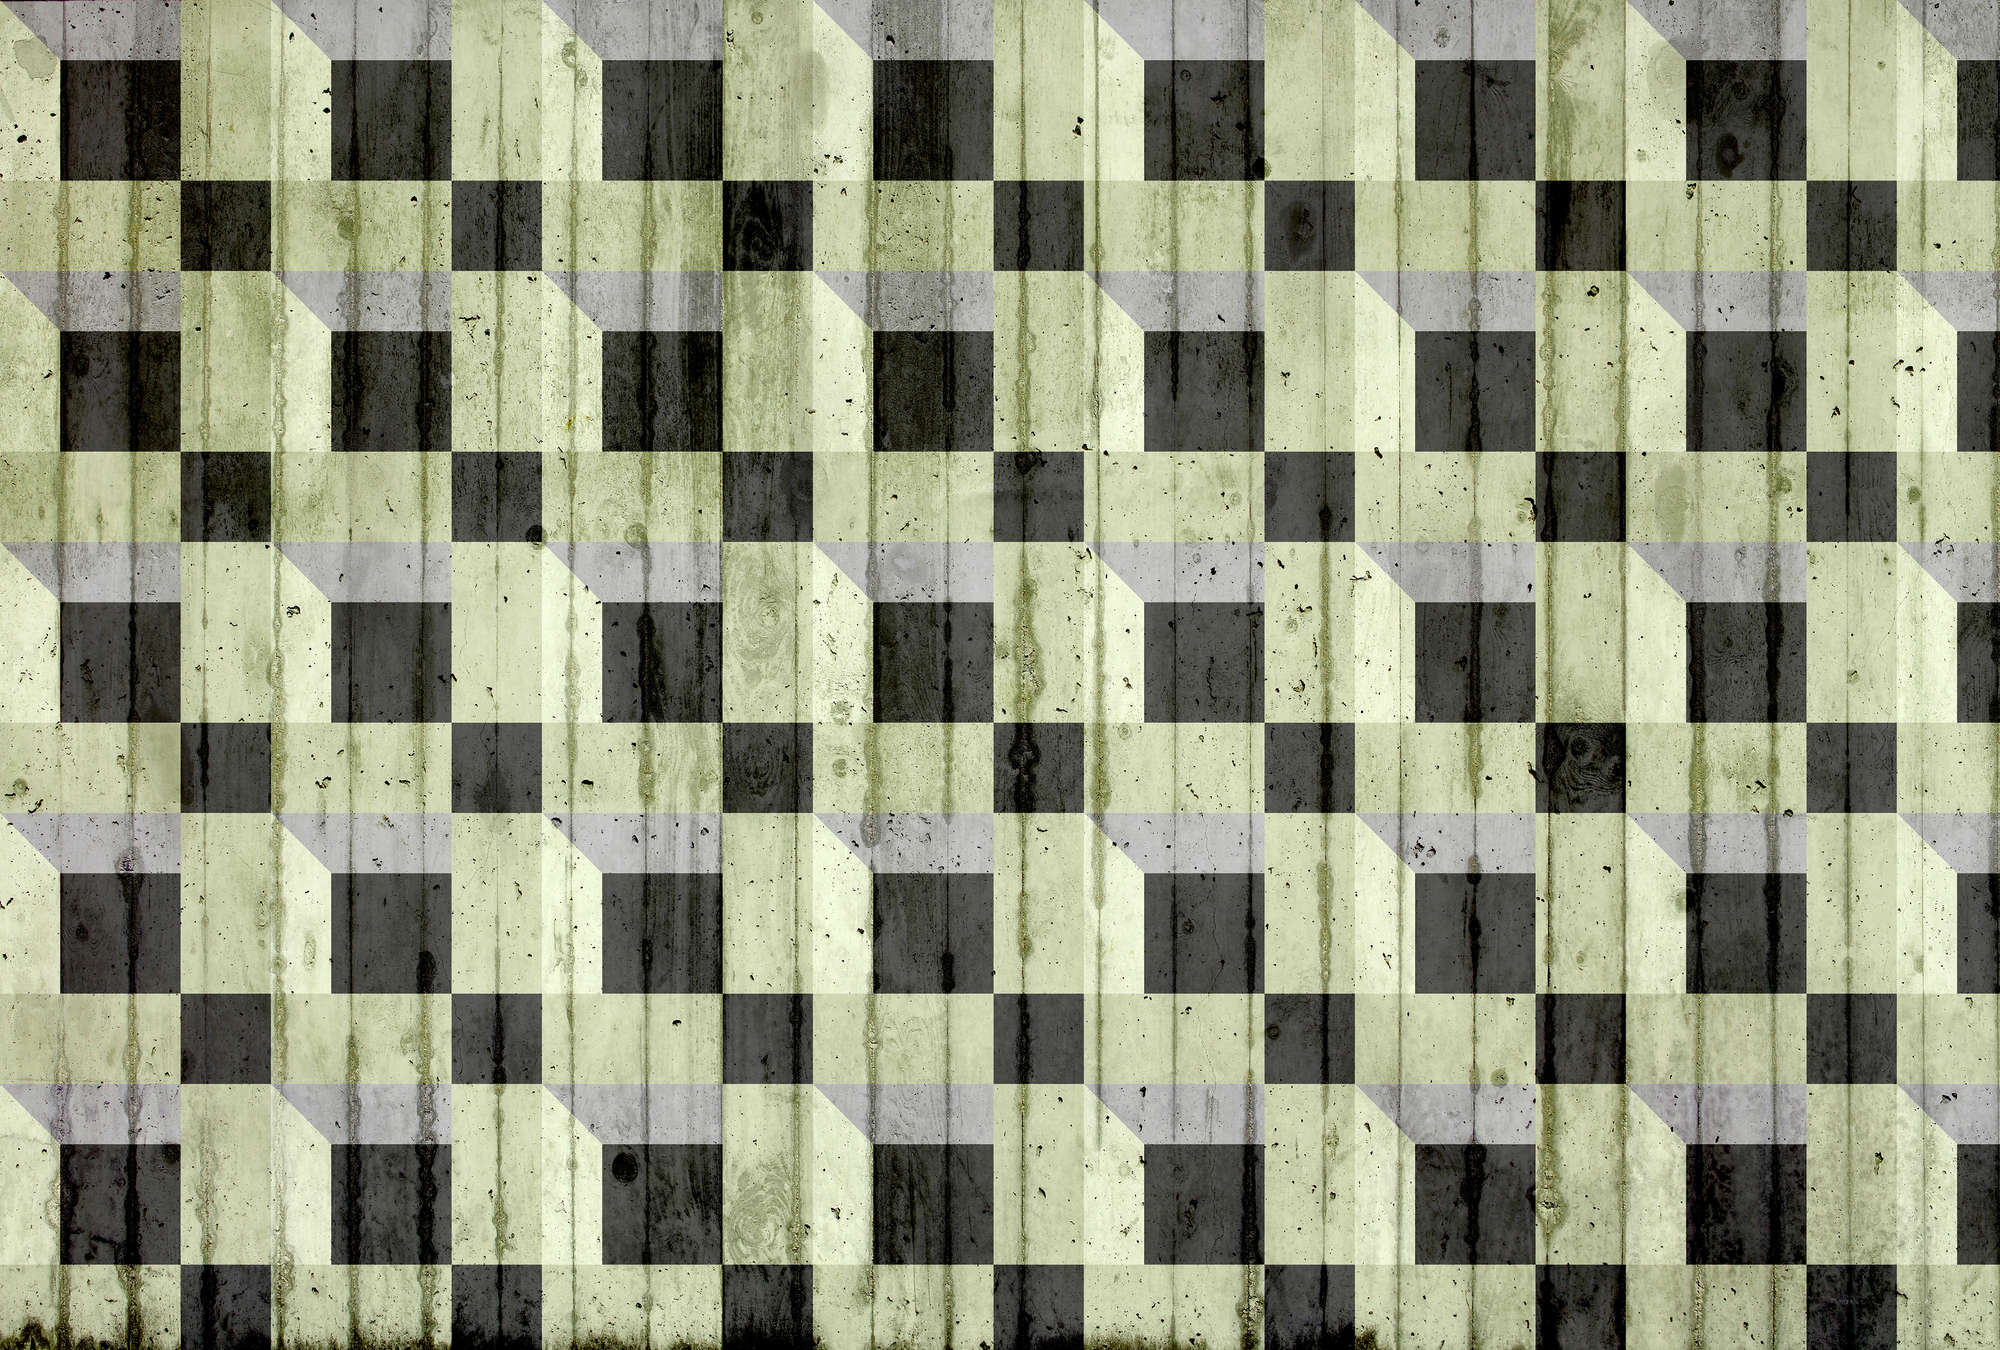             Betonlook & Vierkant Patroon Behang - Groen, Zwart, Grijs
        